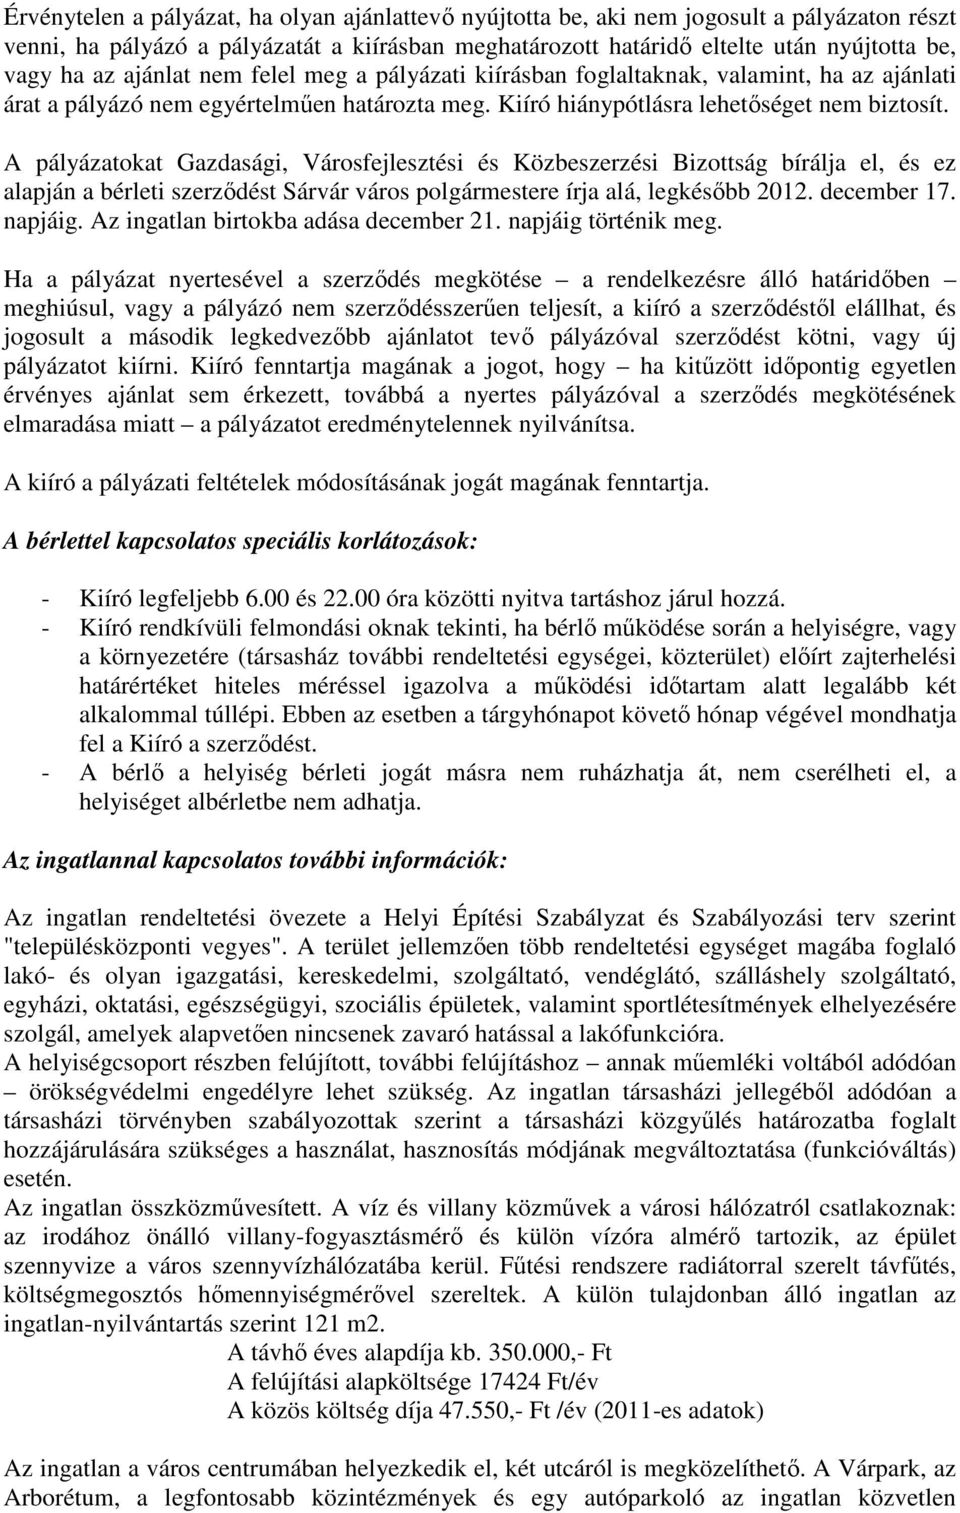 A pályázatokat Gazdasági, Városfejlesztési és Közbeszerzési Bizottság bírálja el, és ez alapján a bérleti szerződést Sárvár város polgármestere írja alá, legkésőbb 2012. december 17. napjáig.